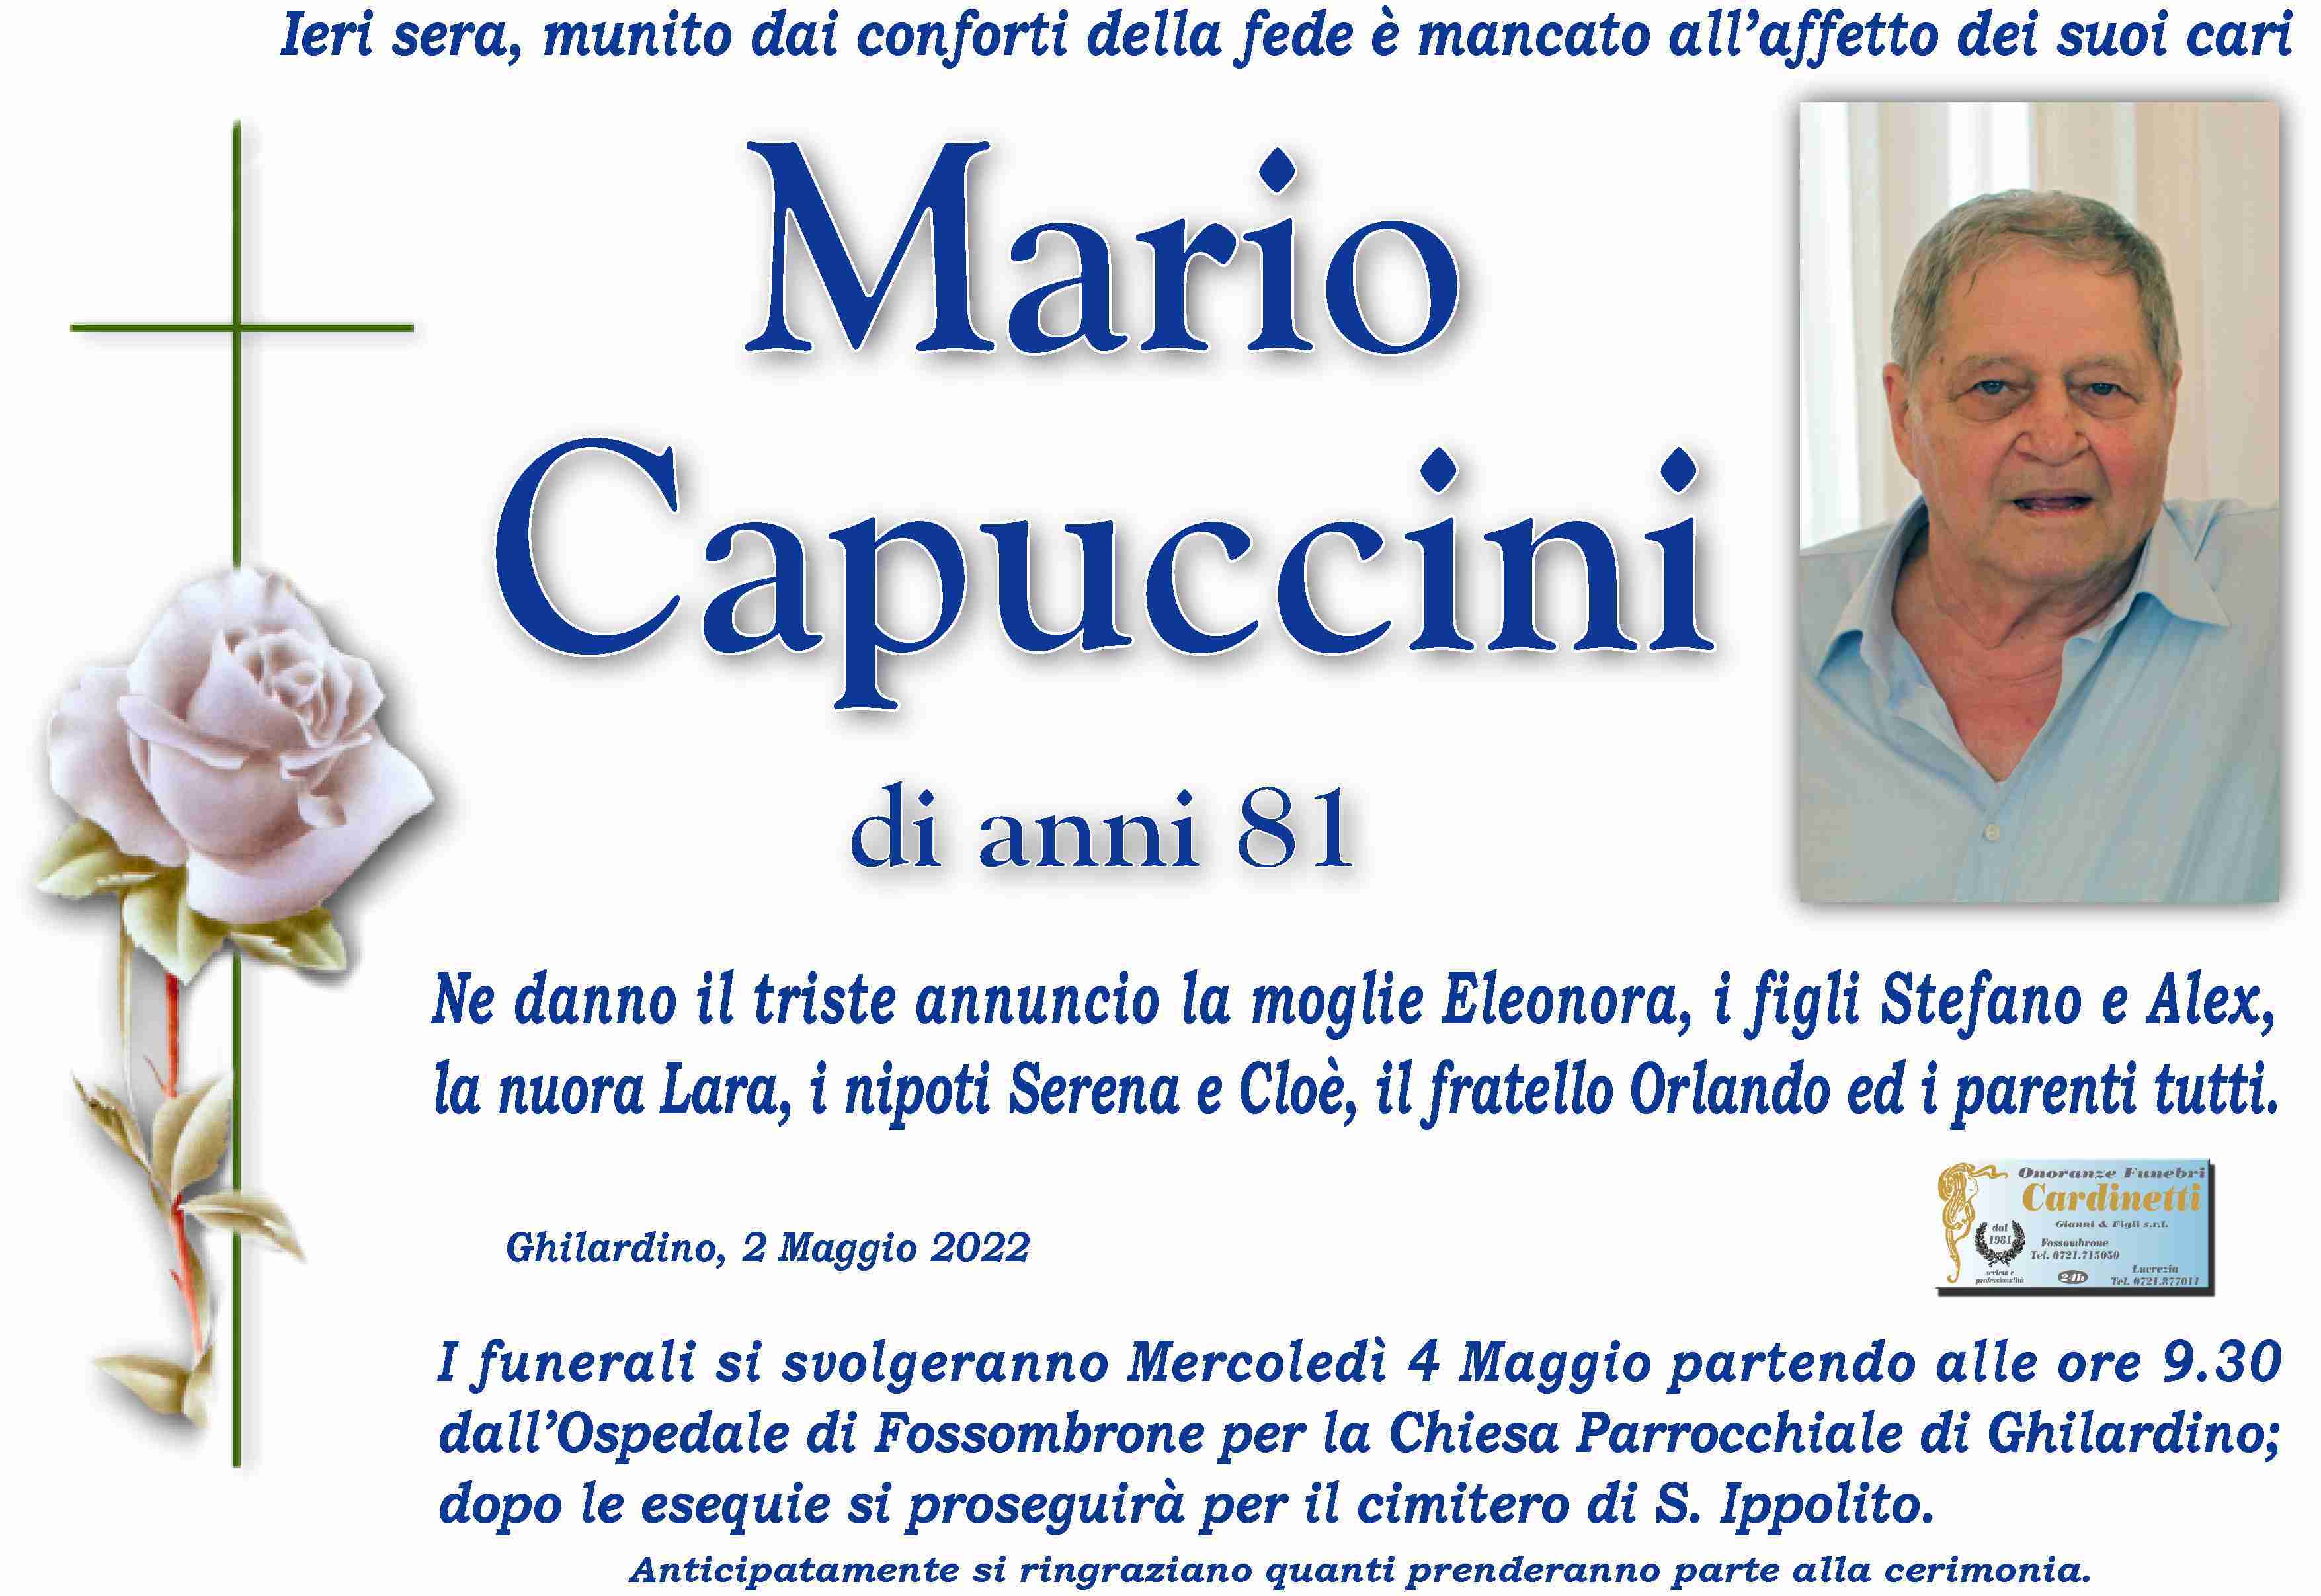 Mario Capuccini